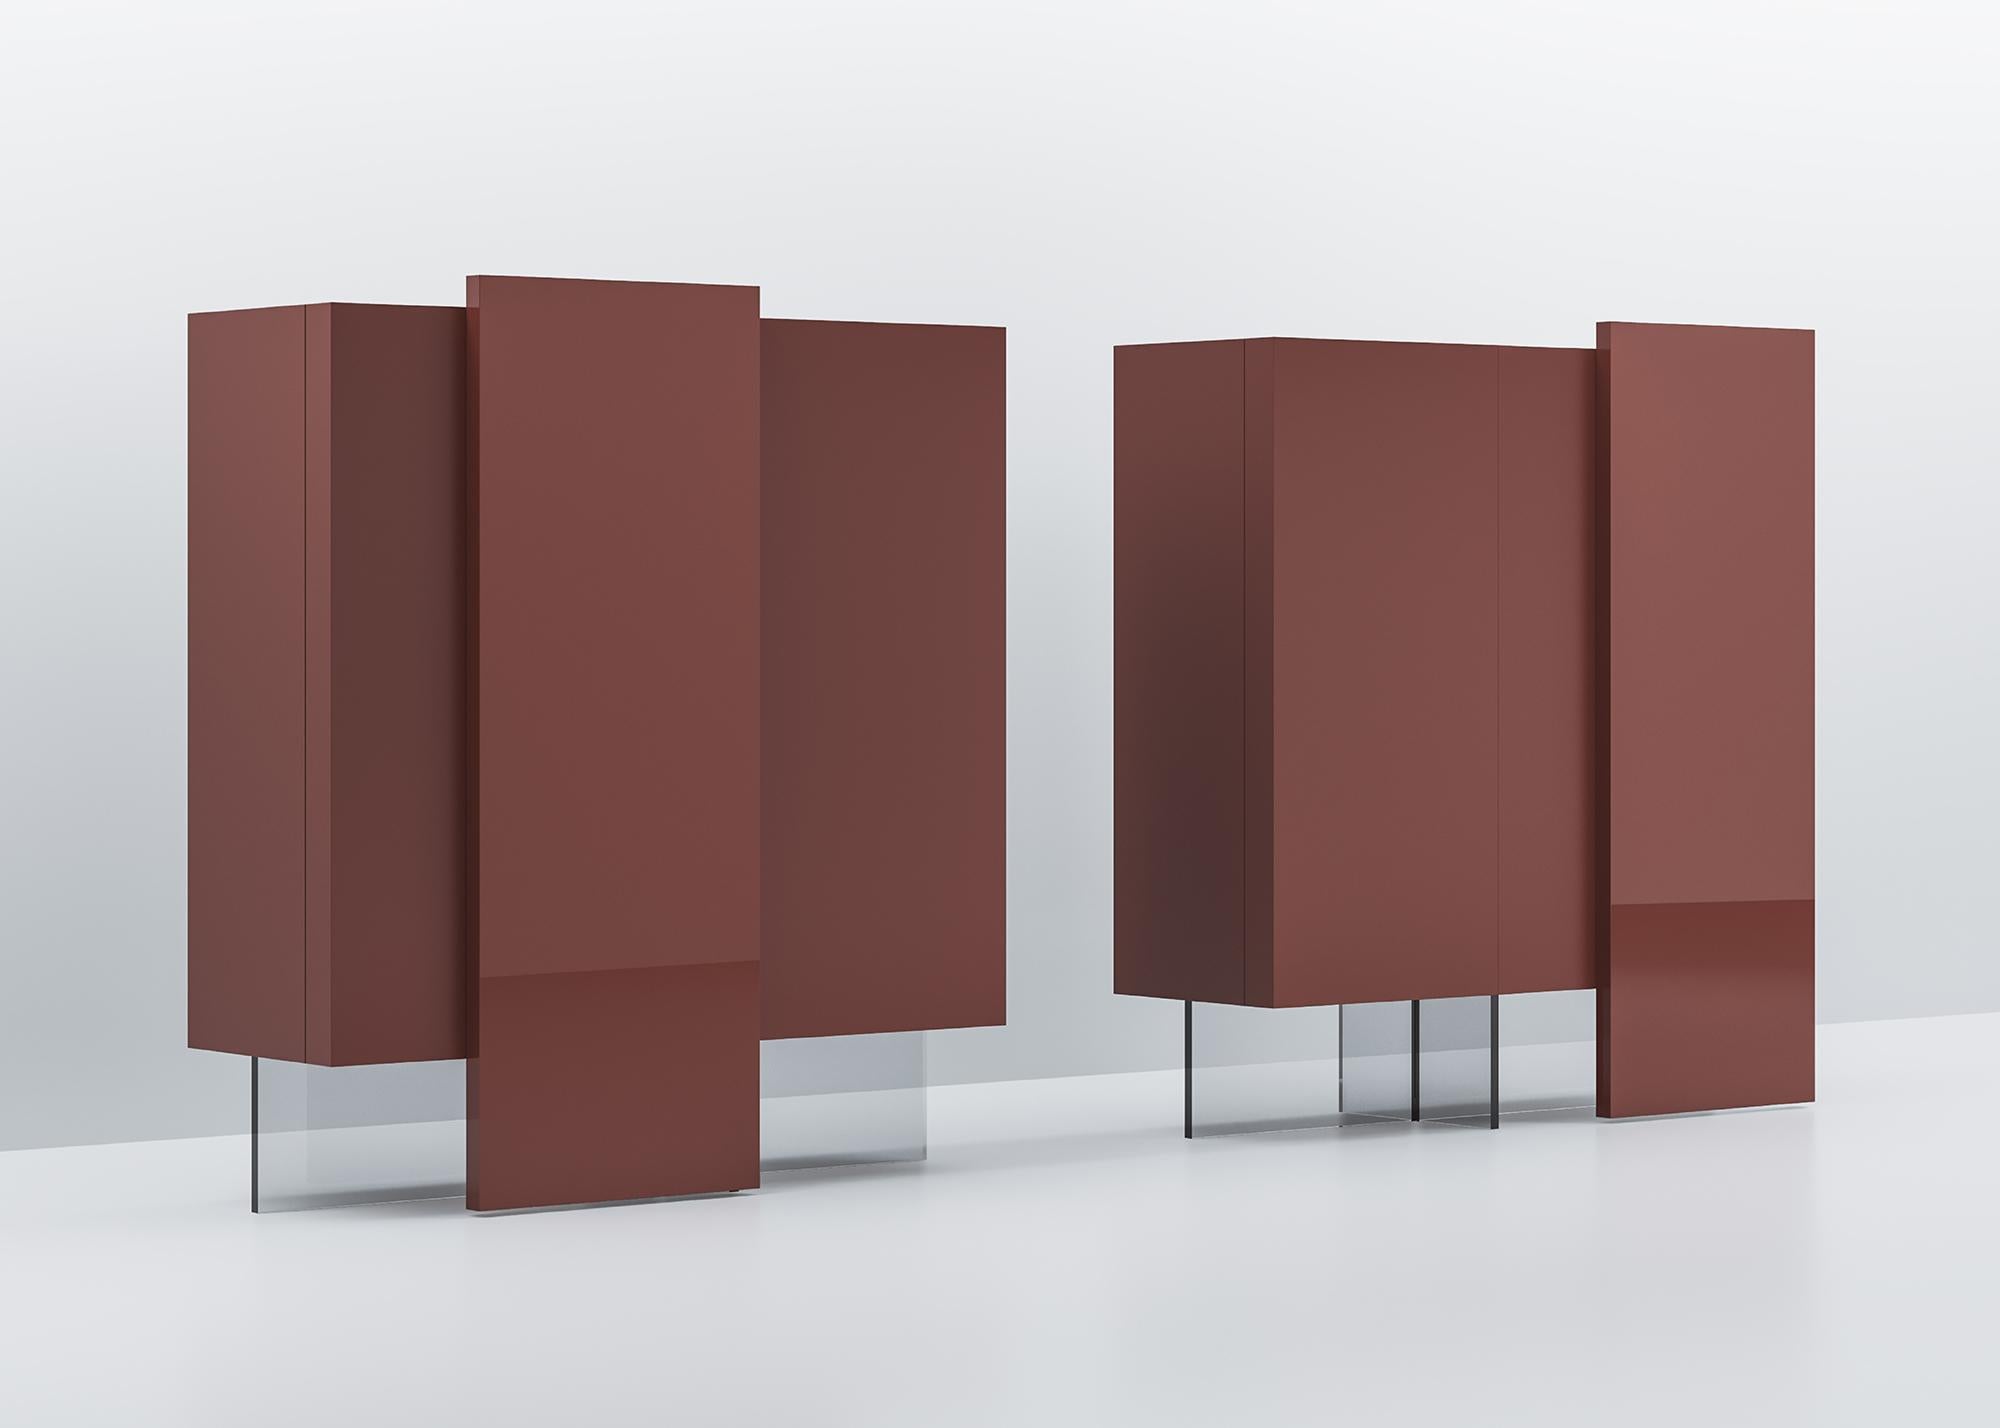 Zwei vertikale Sideboards, die dank ihrer unterschiedlichen Aufteilung sowohl allein als auch zu zweit stehen können.
Der Schrank wird durch zwei Flügeltüren und eine darüber liegende Schiebeplatte geschlossen, die ein weiteres Fach freigibt. Die